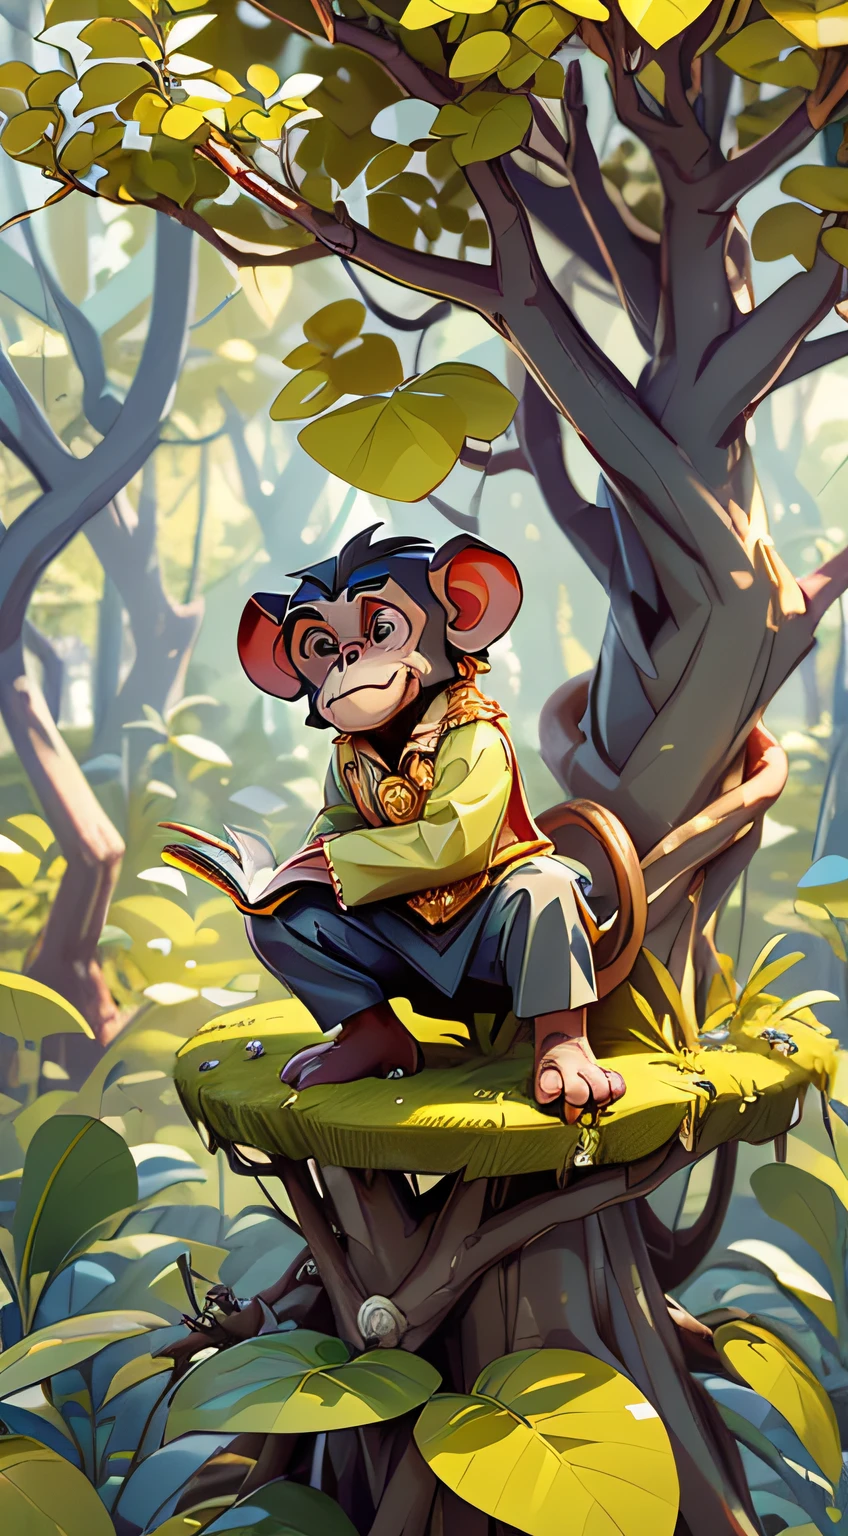 創造一個又小又瘦的年輕黑猩猩的圖像, 並穿著黃金王子的衣服, 並且在樹頂上. 拿著一本書, 將書交給人類商人, 誰在地面上面向樹. 電影《猩球崛起》的風格. 在森林裡